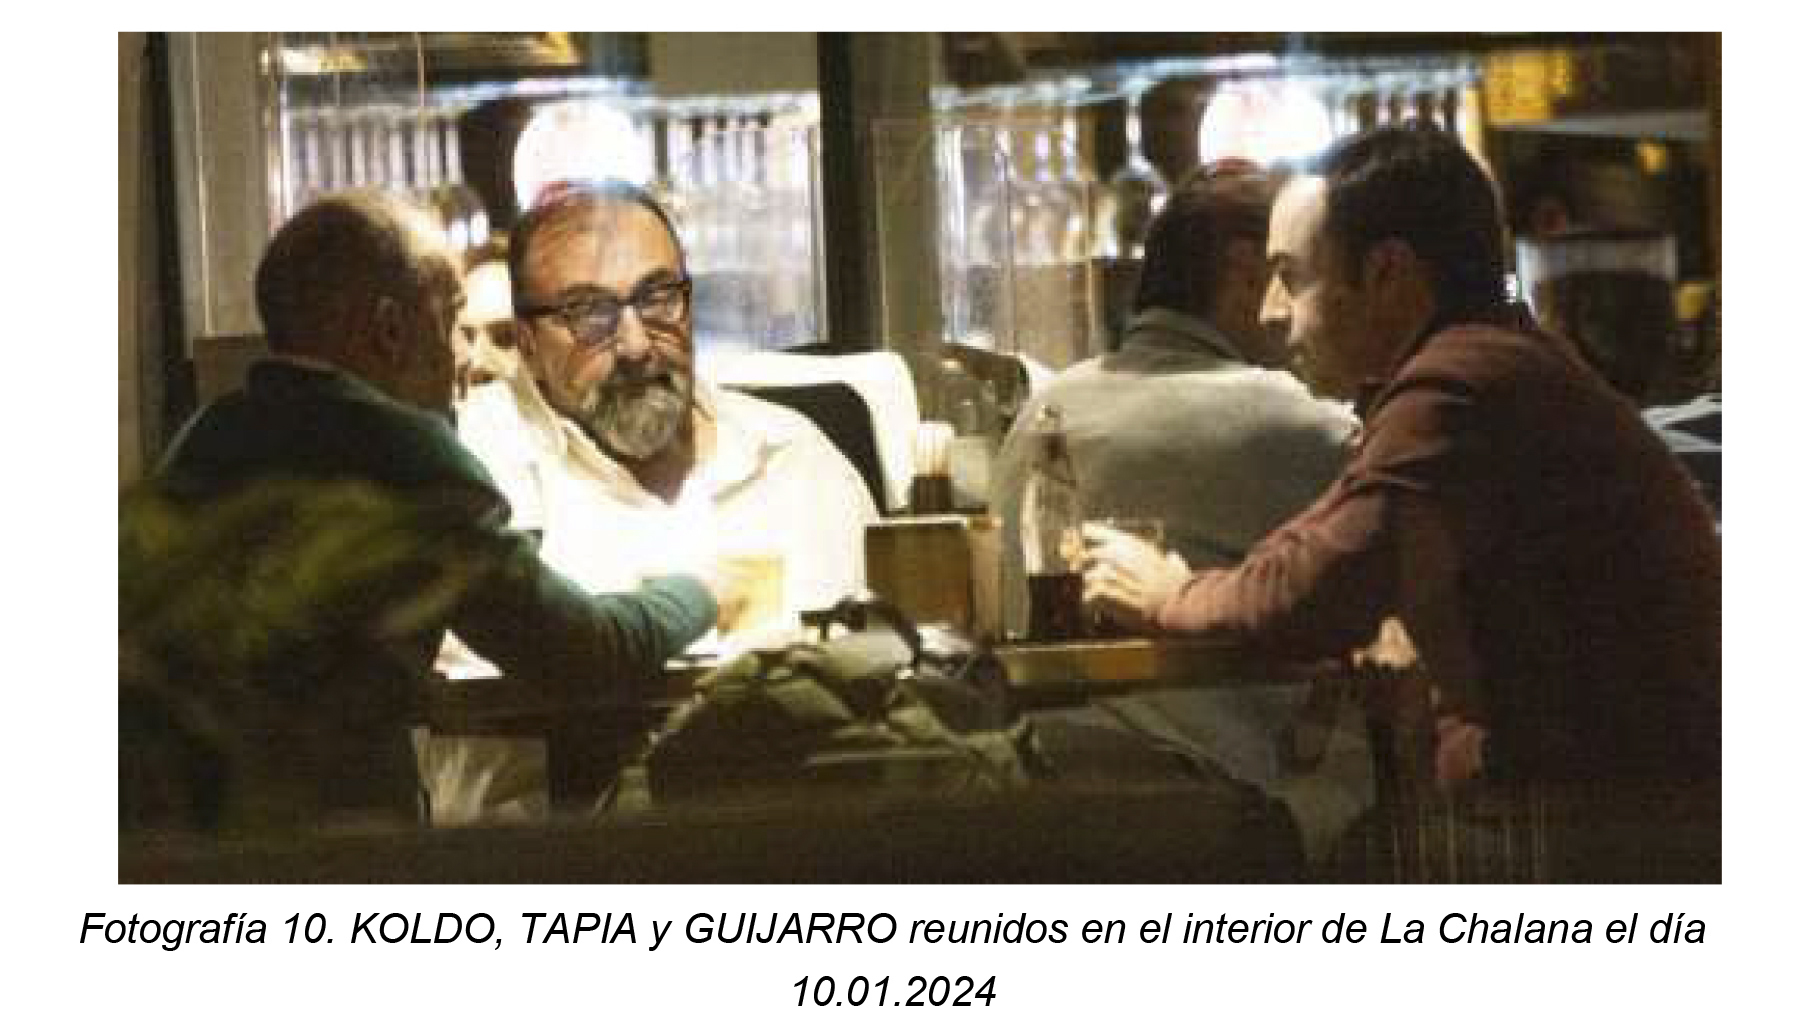 Koldo, Tapia y Guijarro, reunidos en el interior de La Chalana.